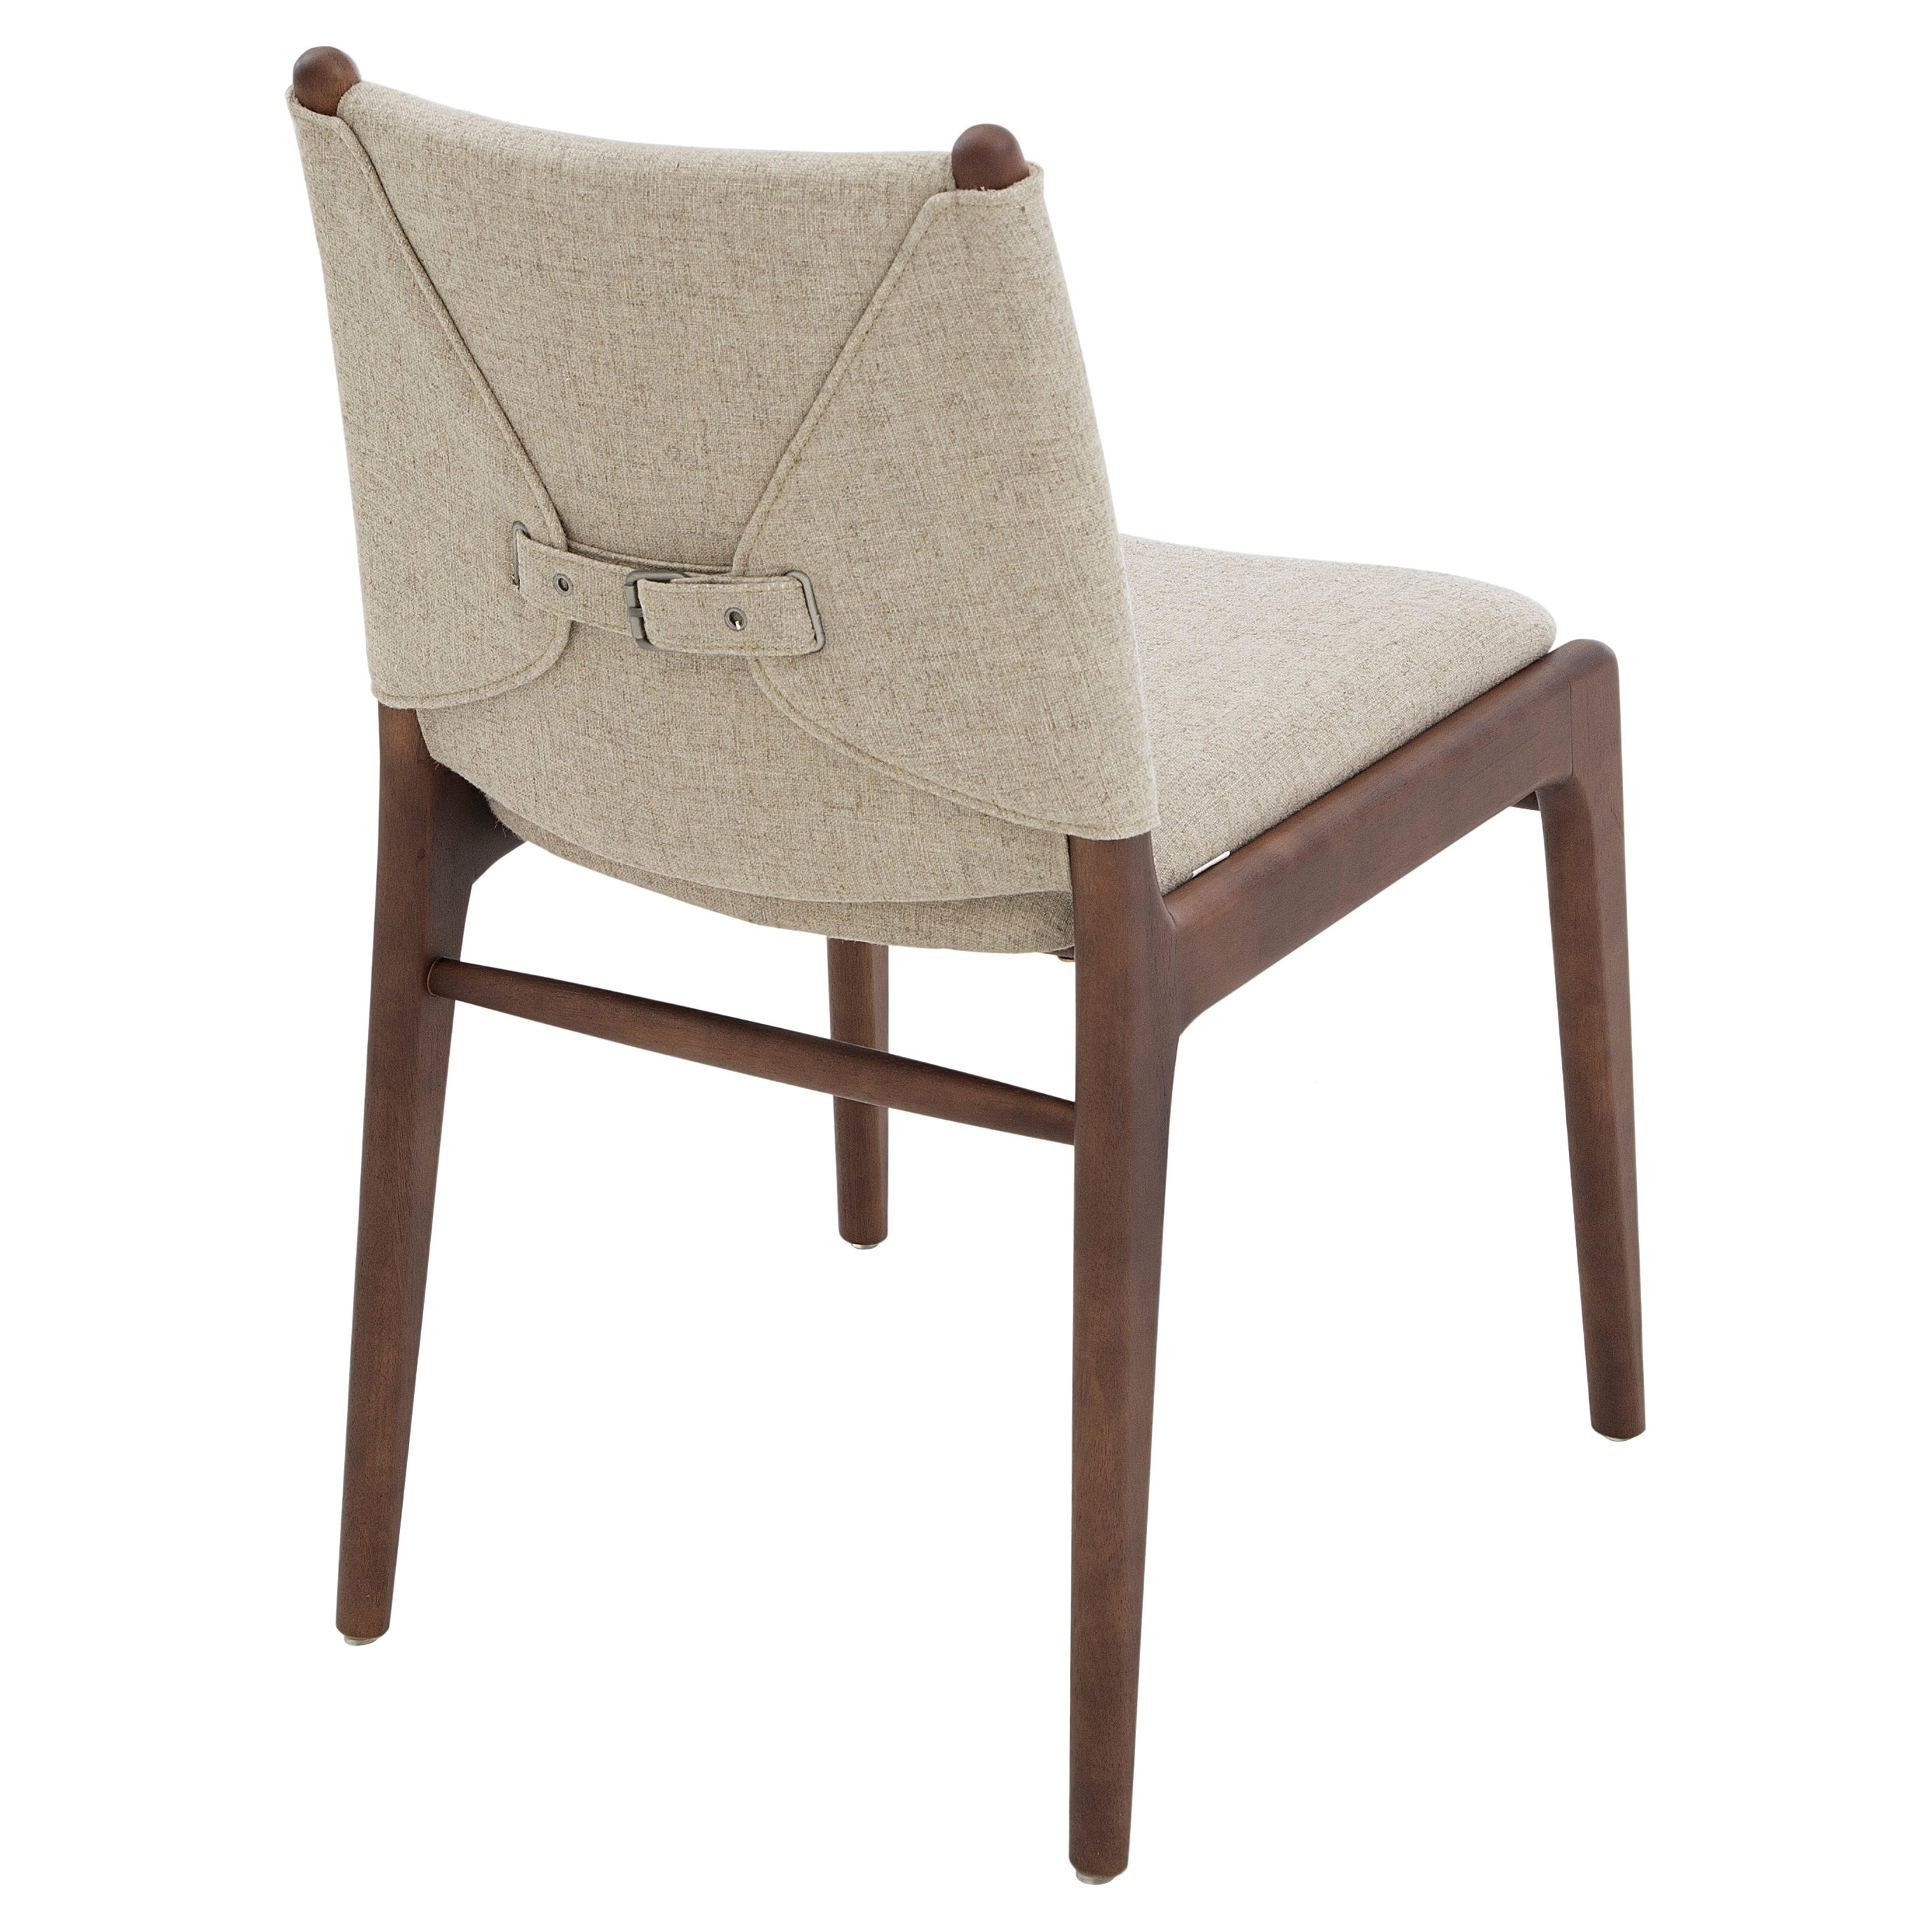 La chaise Cappio met en valeur notre magnifique finition en bois de noyer combinée à un superbe tissu beige. Cette chaise présente un design unique de boucles sur le dos de l'assise. Notre équipe chez Uultis a conçu ce design simple mais élégant qui